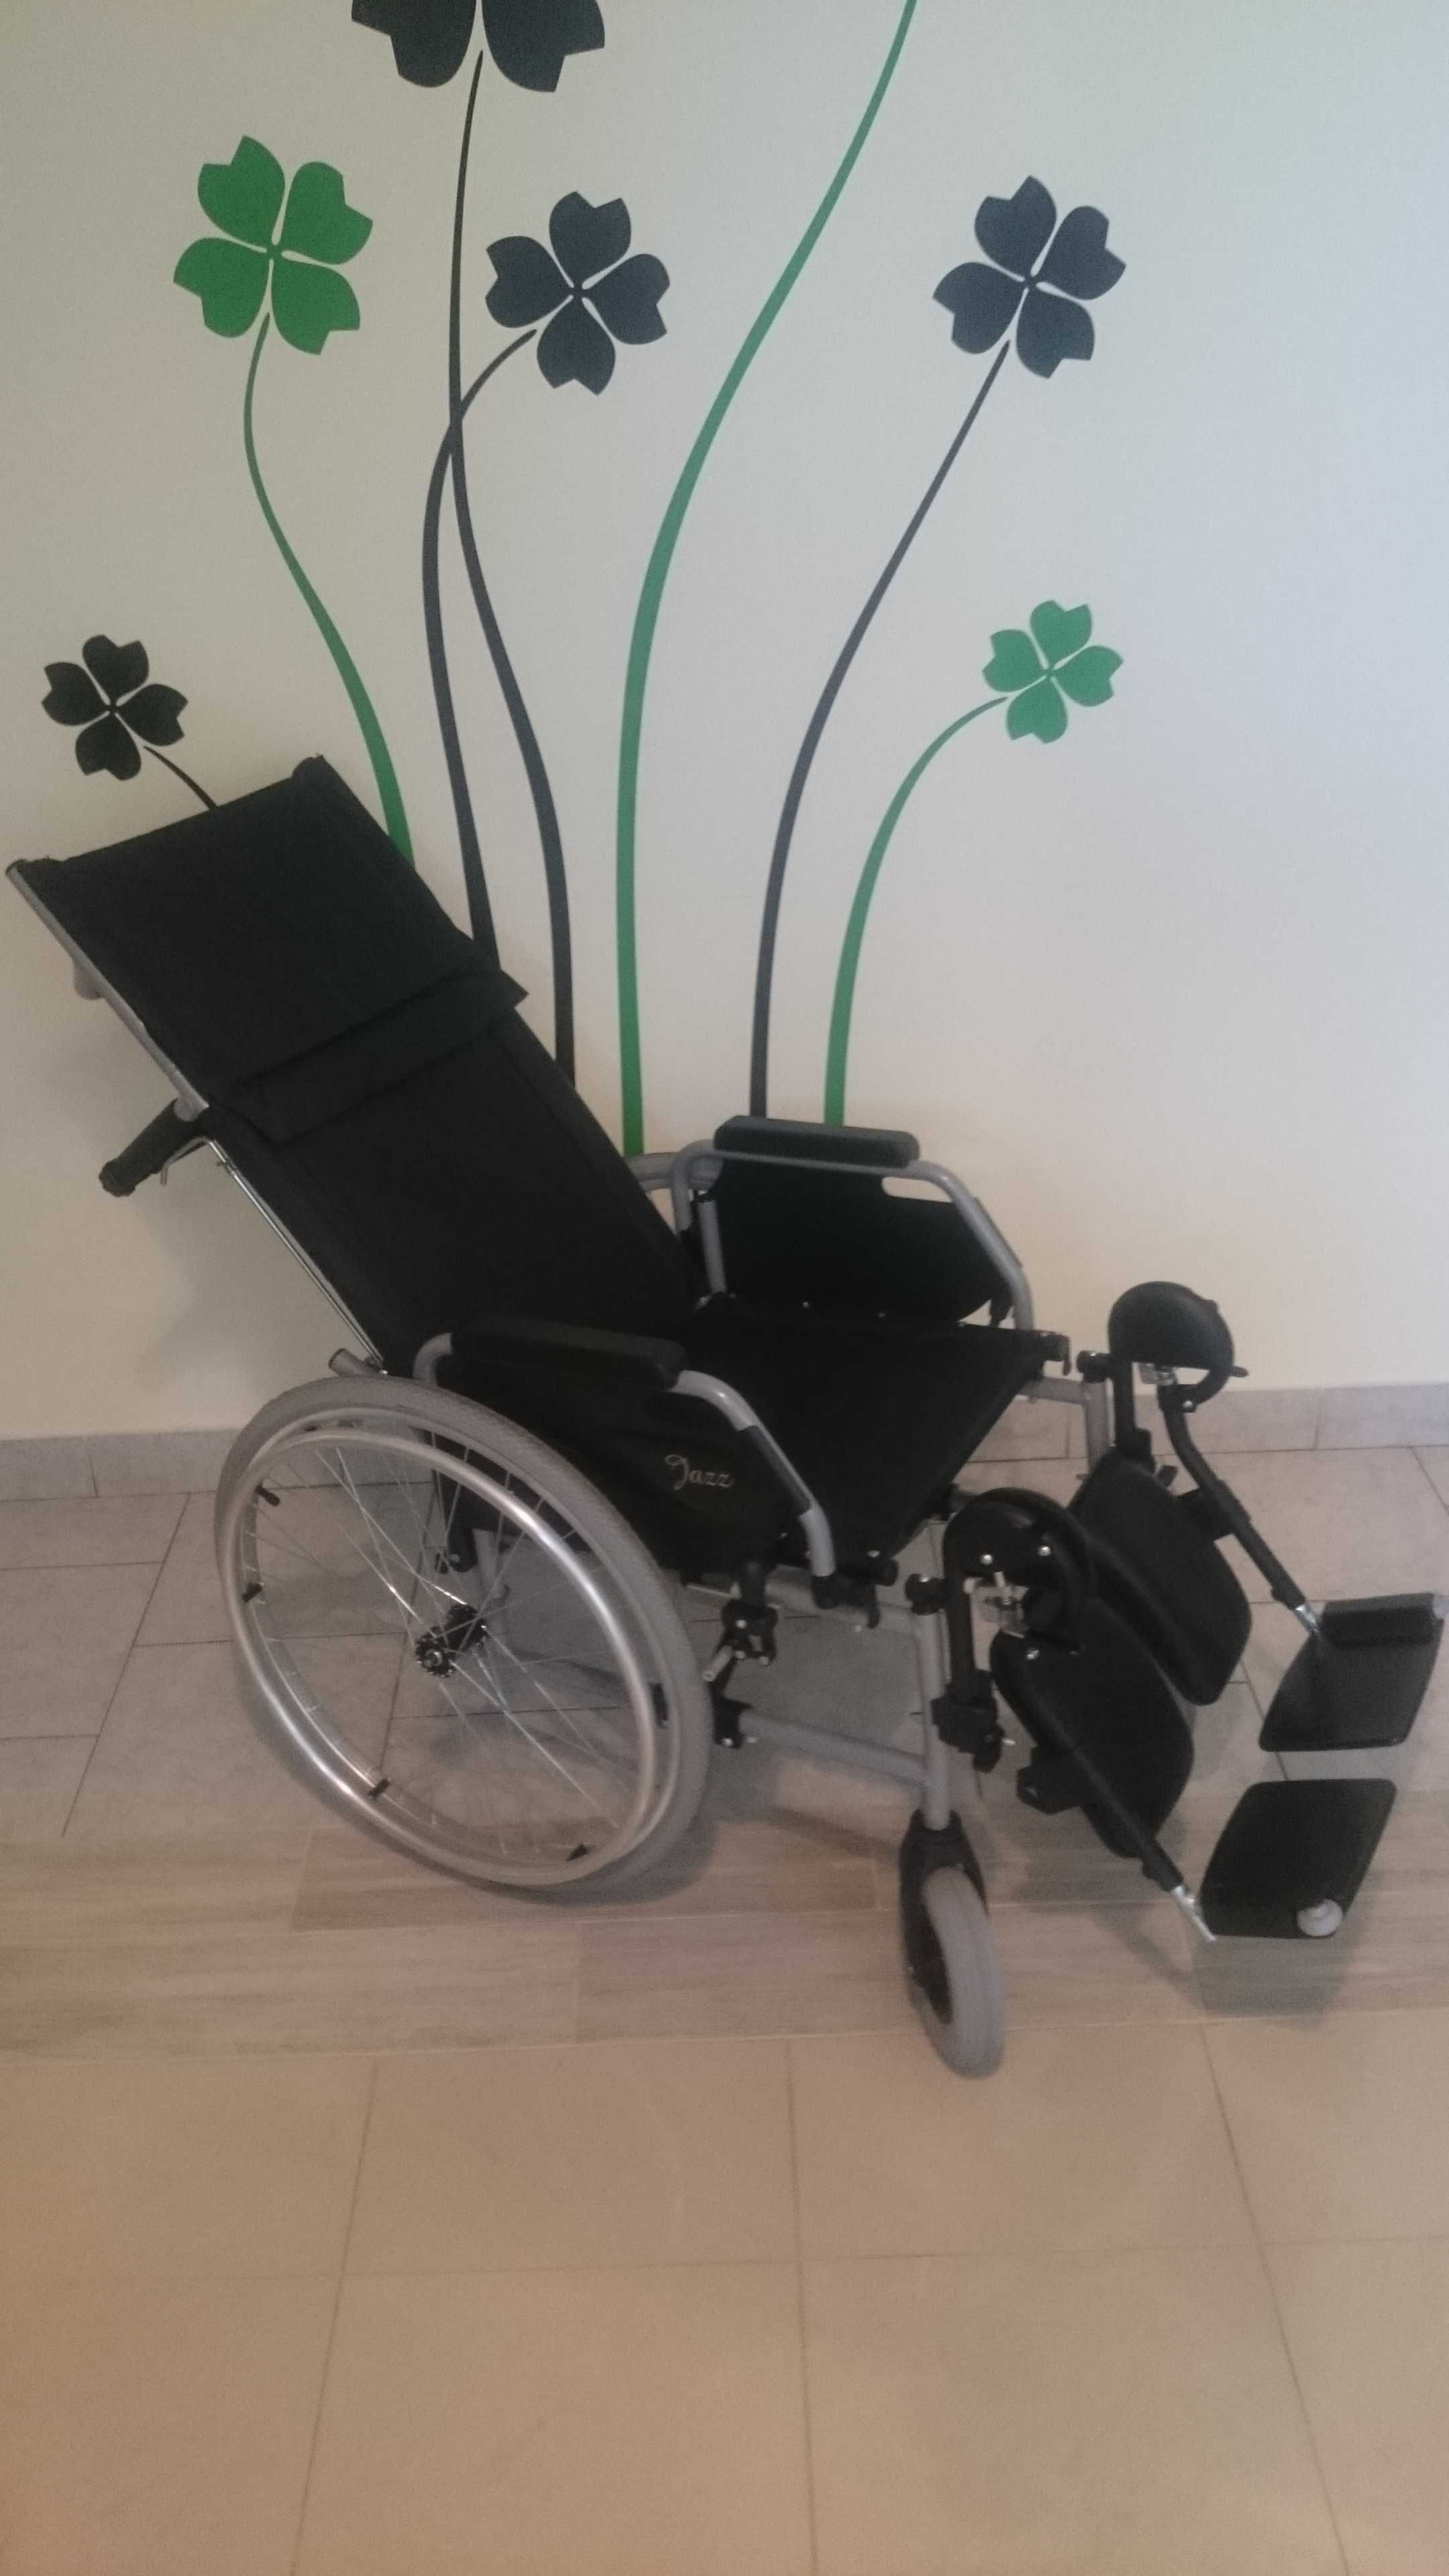 Wypożyczalnia wózki rehabilitacyjne aluminiowe, wózek medyczny wynajem